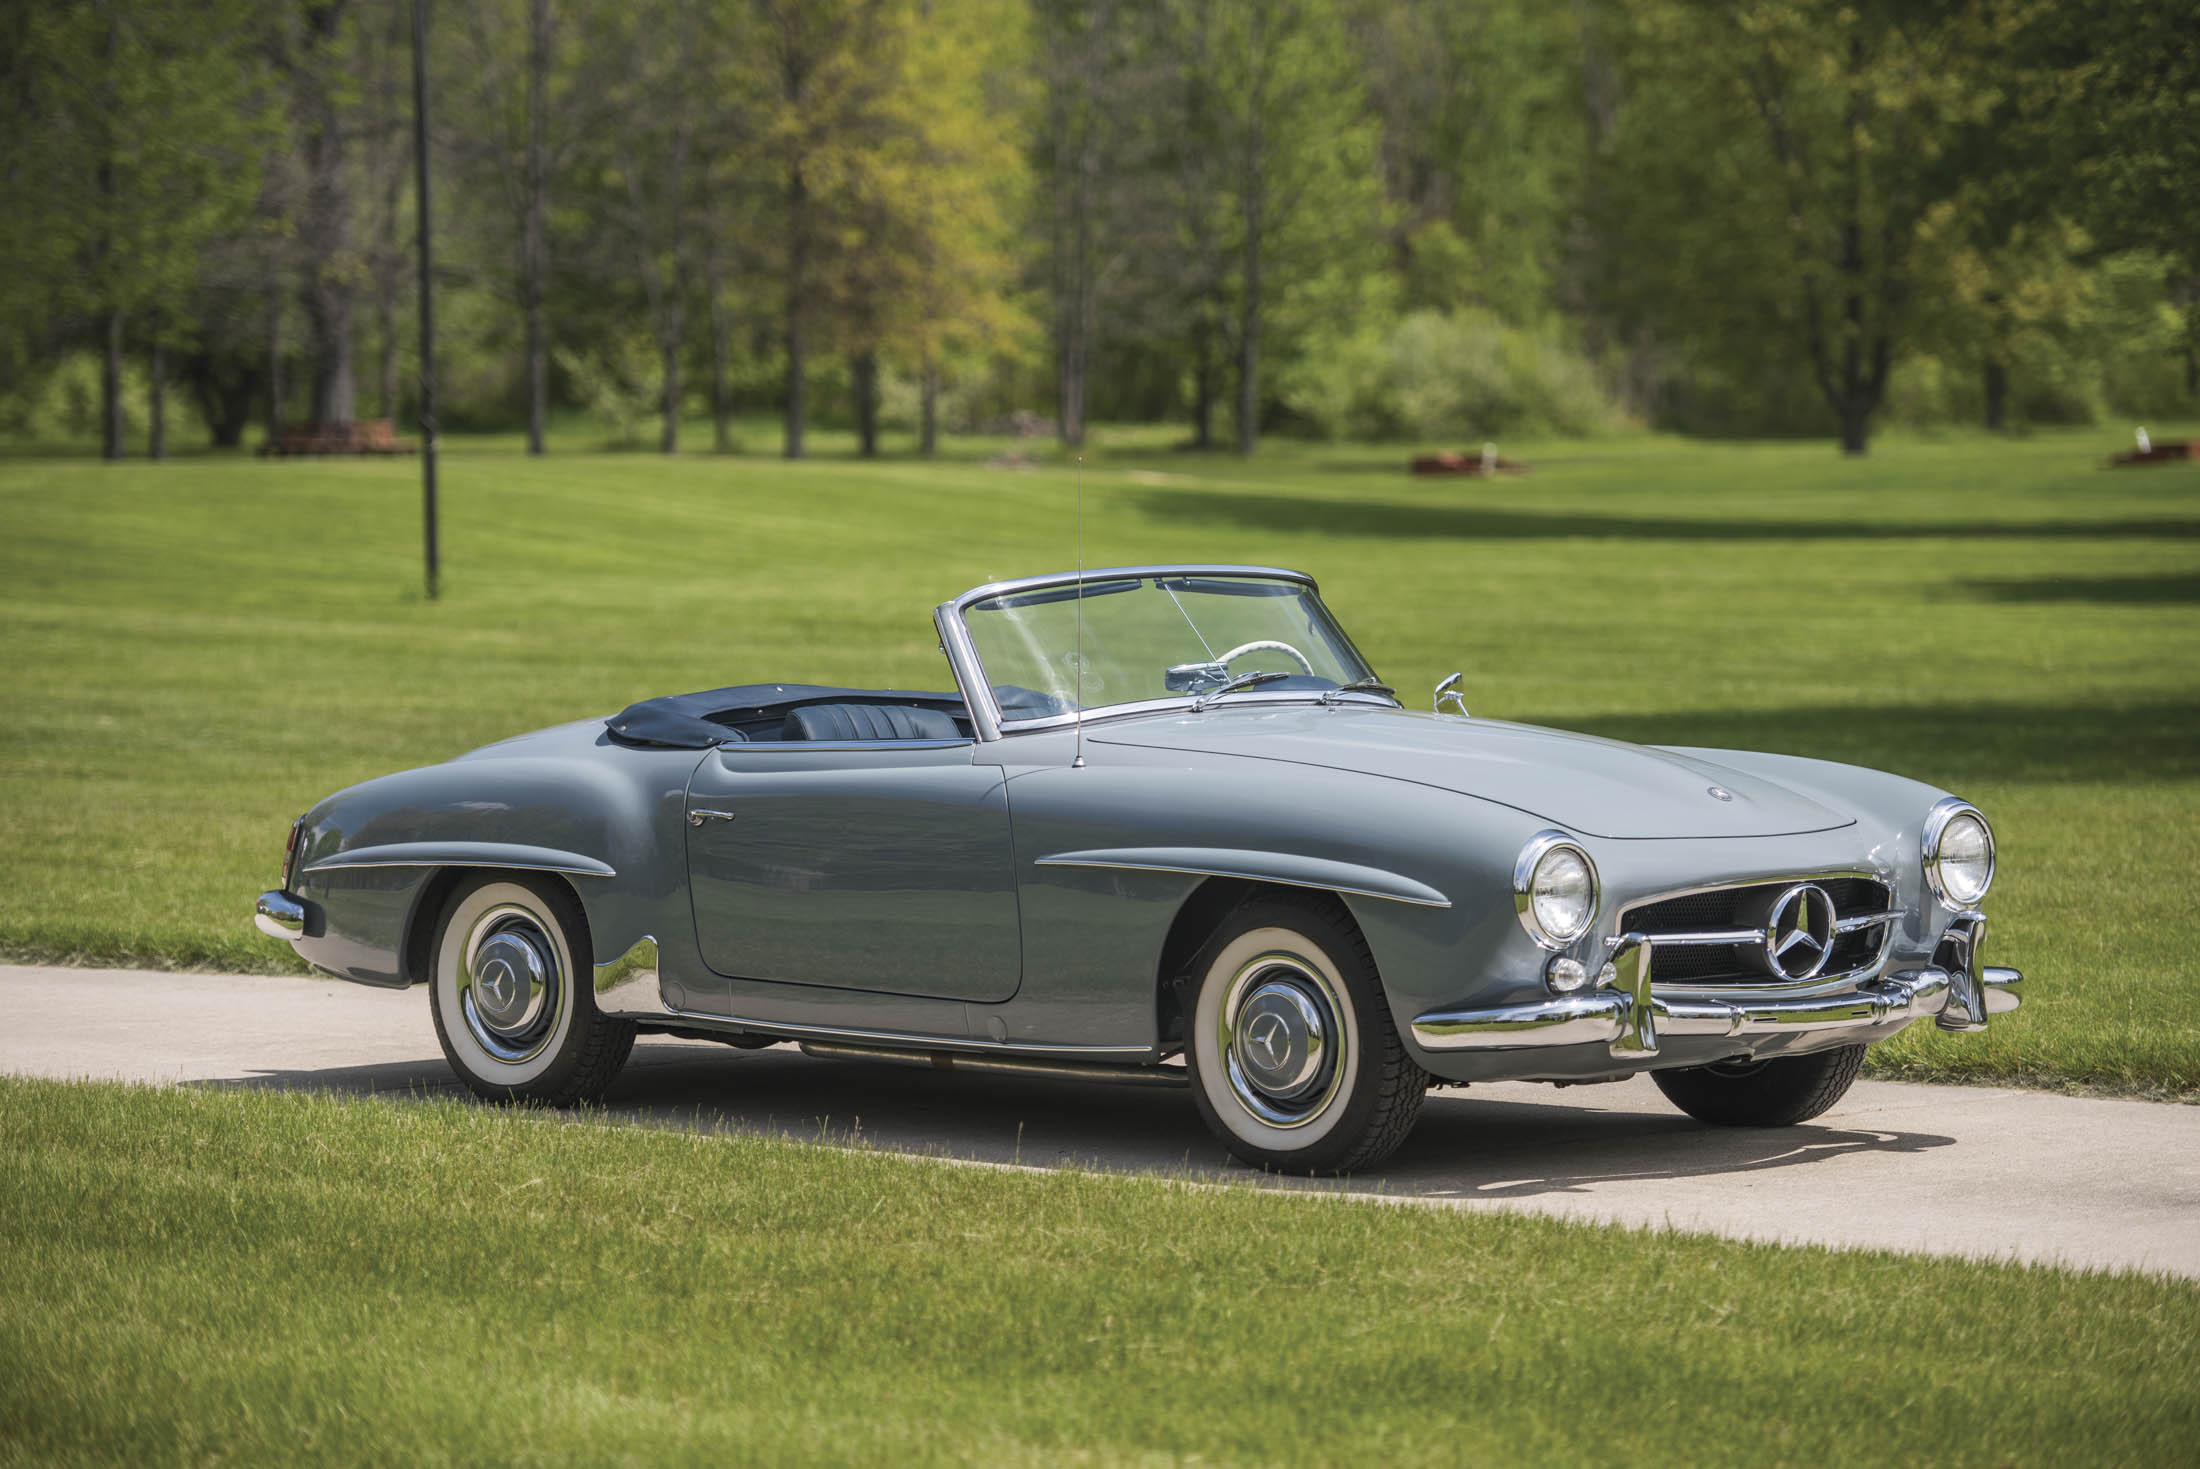 
Với khối động cơ 4 xi-lanh với hộp số sàn 4 cấp có khả năng sản sinh công suất 120 mã lực, chiếc xe 1957 Mercedes-Benz 190 SL cũng được nhiều người quan tâm và đánh giá cao khả năng thu hút sự xuống tay của các đại gia.
